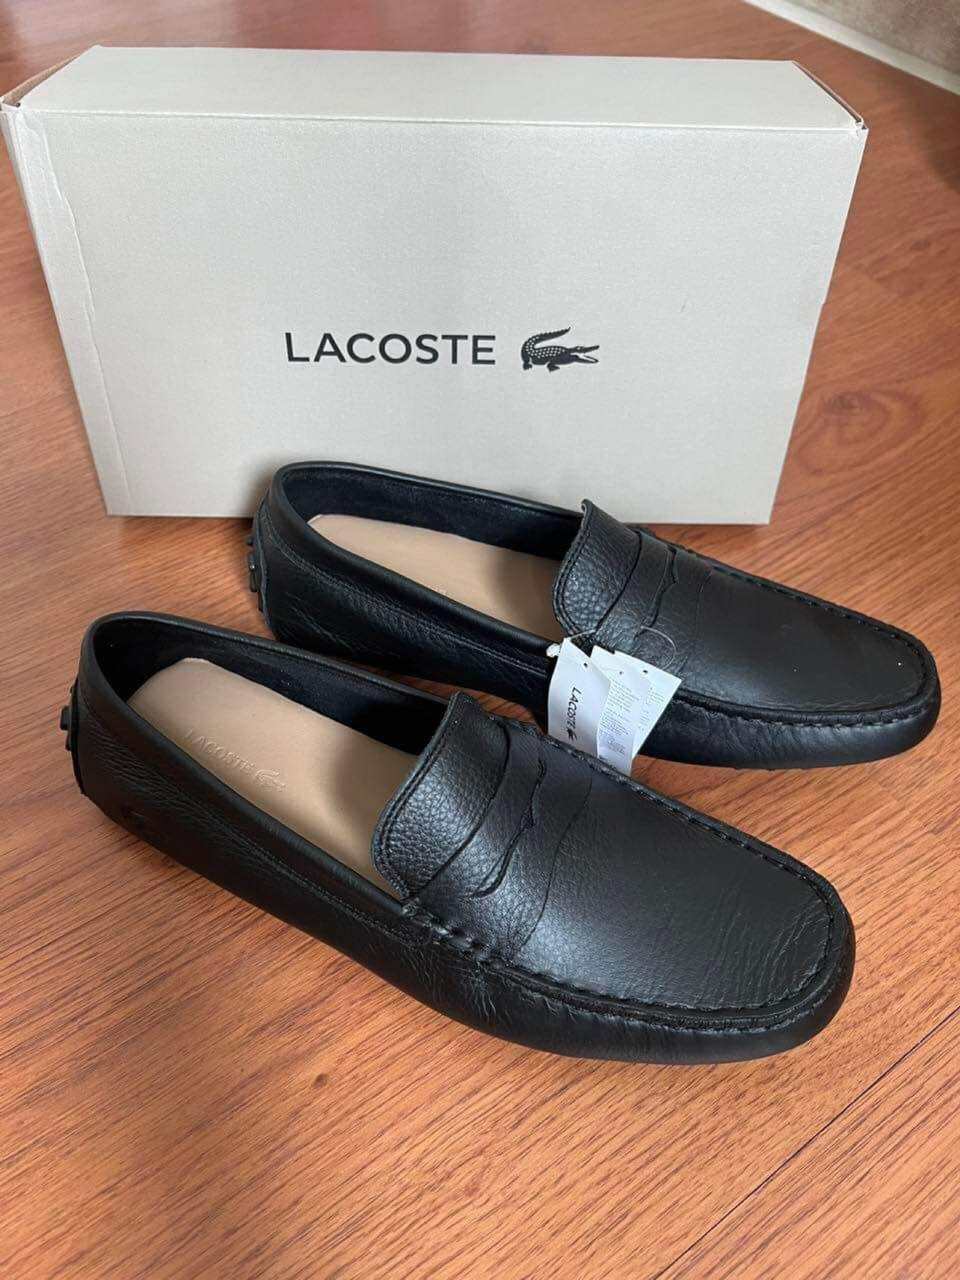 Giày Lacoste Men từ MỸ Thanh lịch, Sang trọng